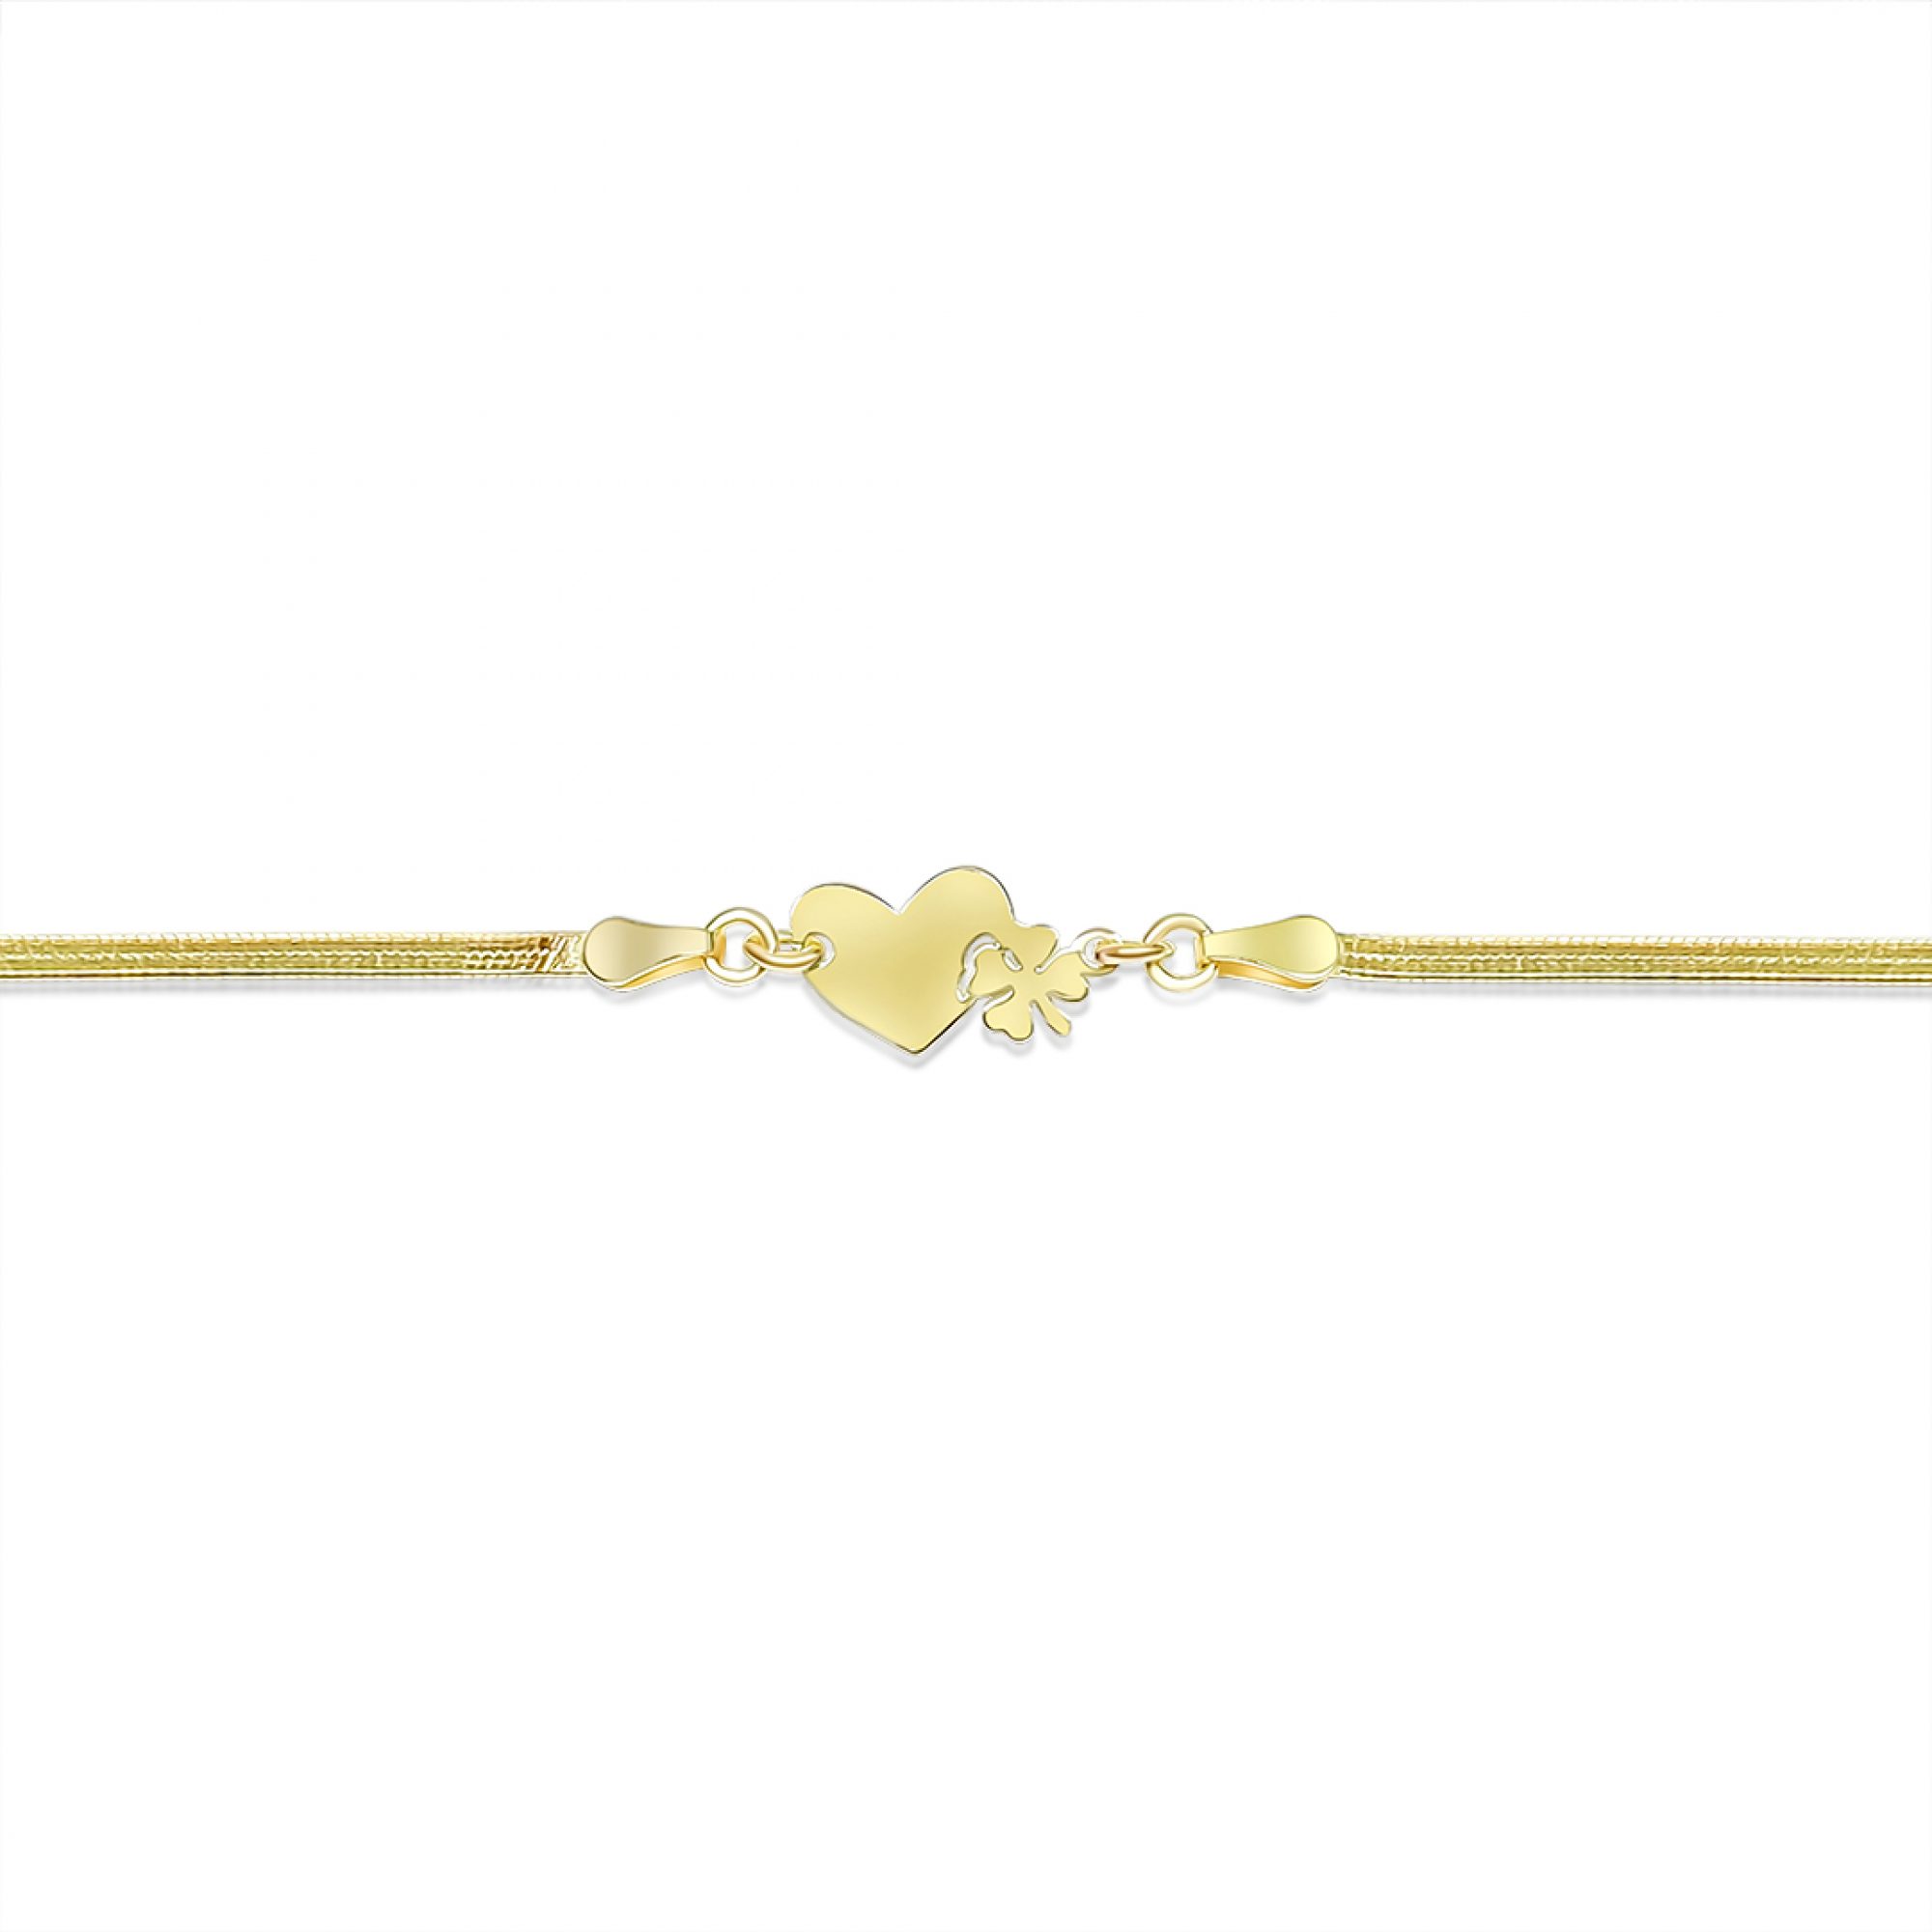 Gold plated heart bracelet